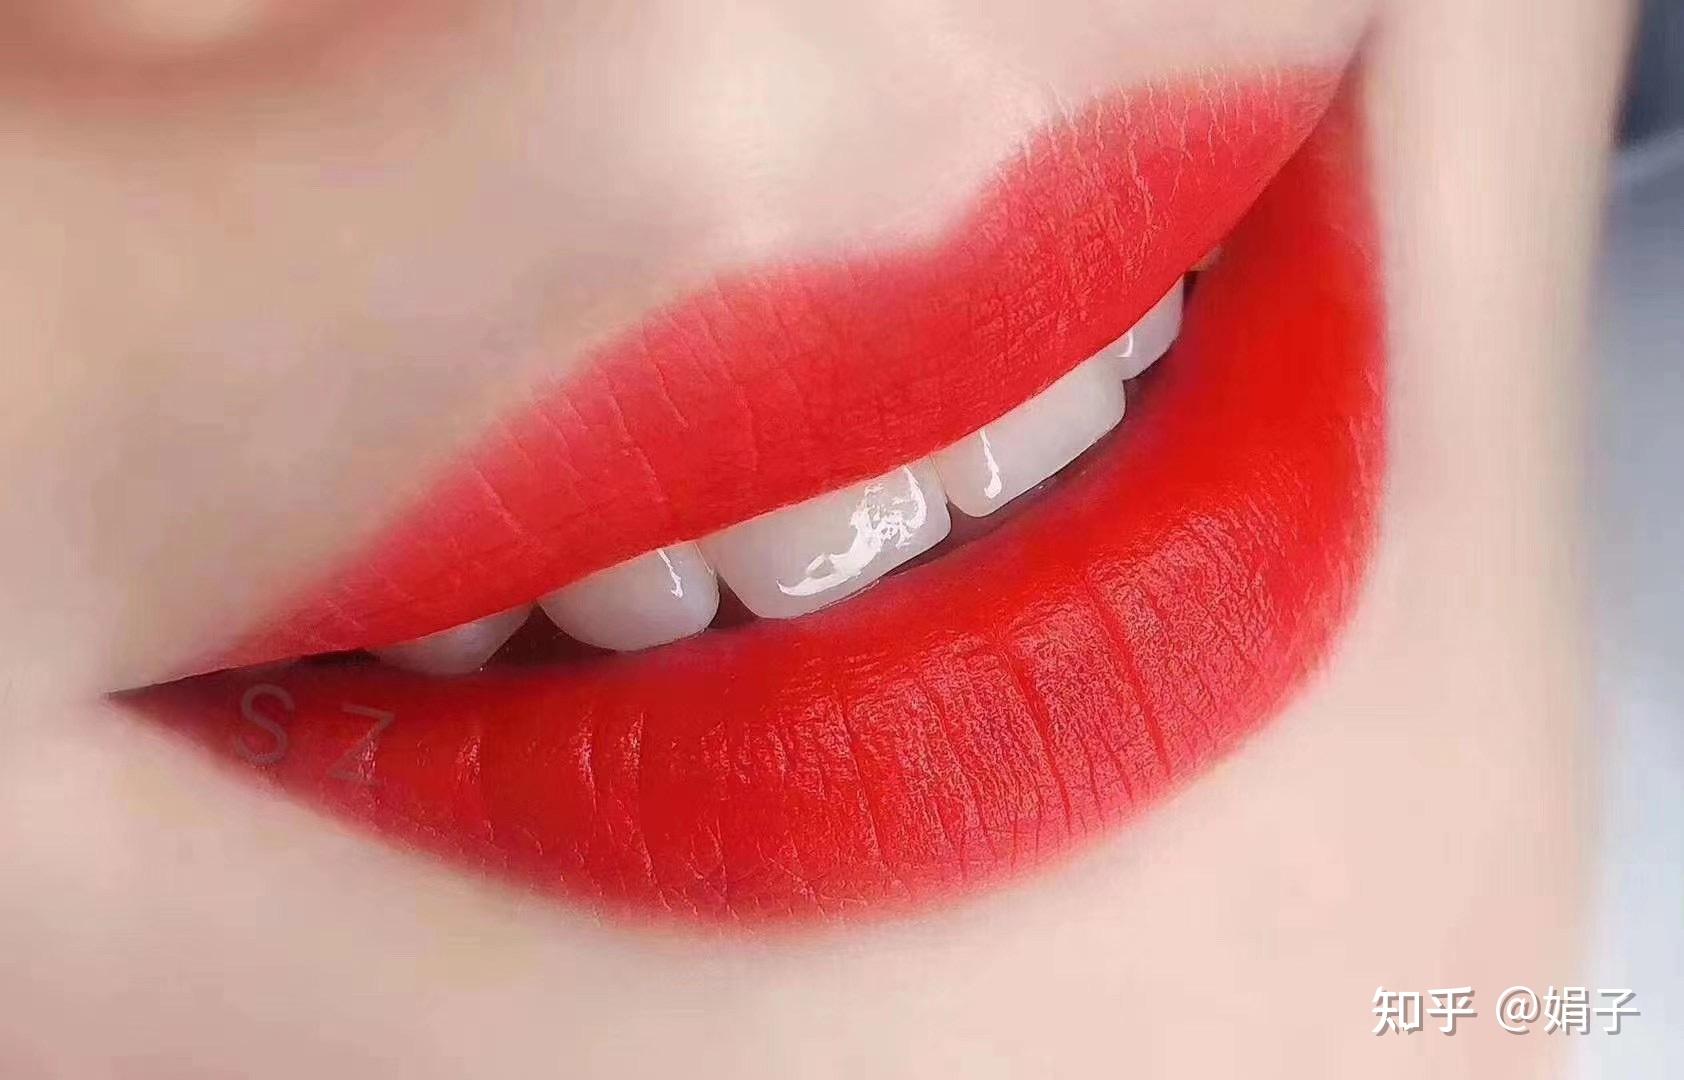 嘴唇干怎么办 教你恢复嘟嘟唇的方法_伊秀视频|yxlady.com